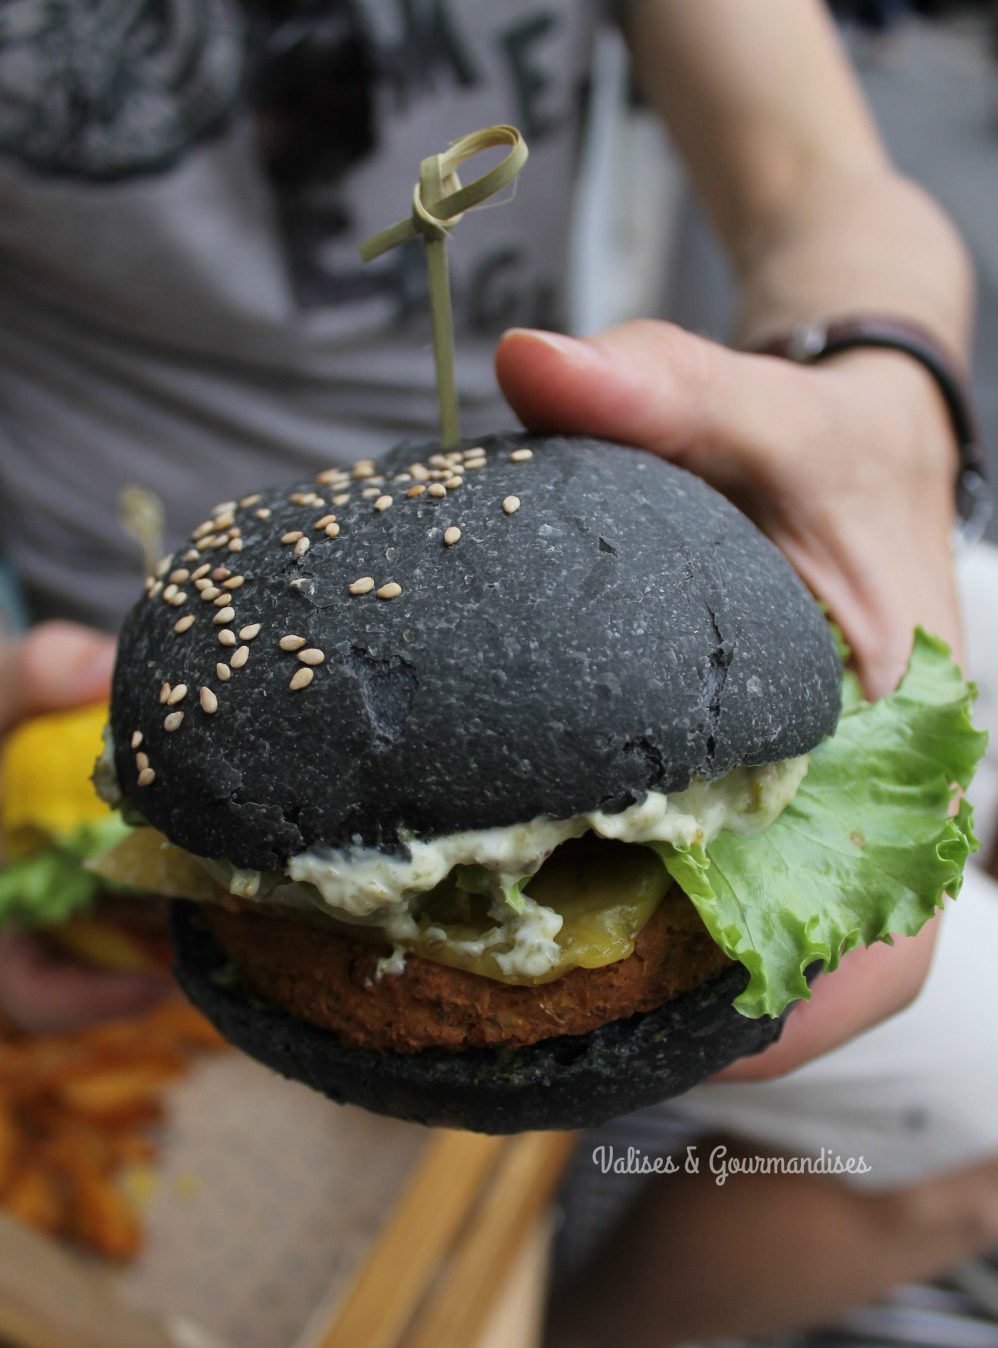 Delicious vegan burgers in Milan, Italy